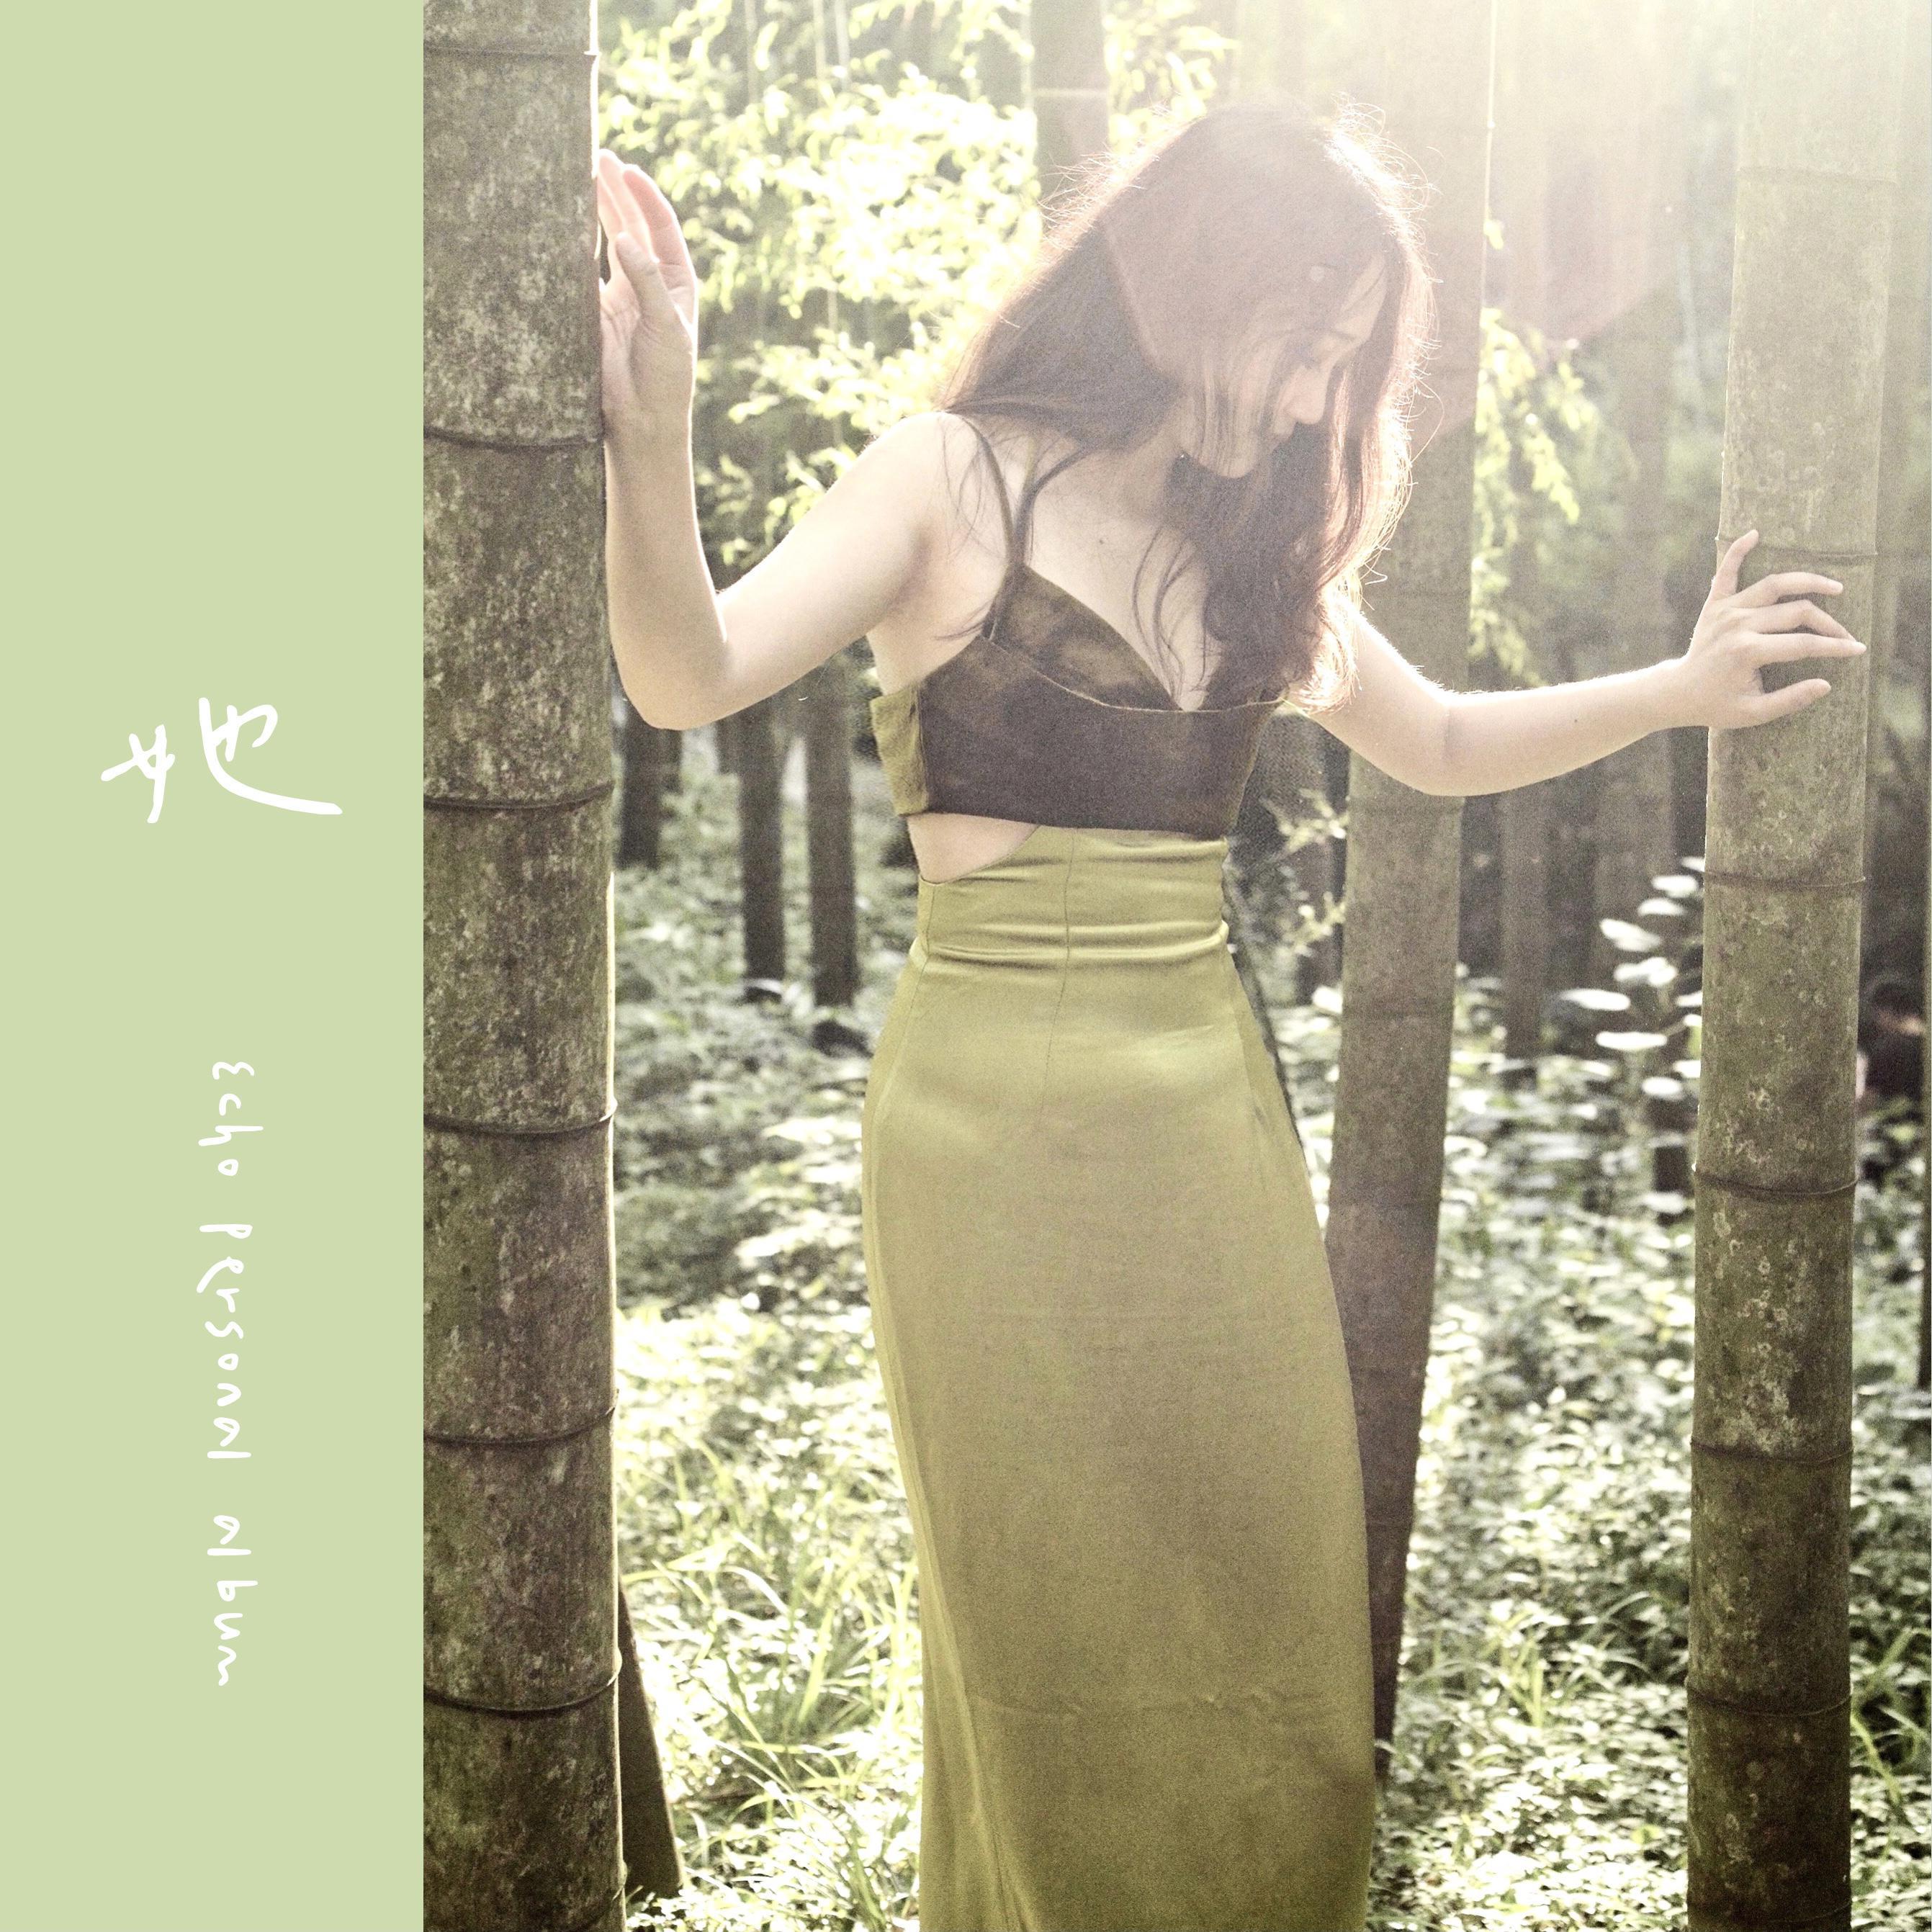 沉睡吧歌词 歌手李玉洁-专辑她-单曲《沉睡吧》LRC歌词下载